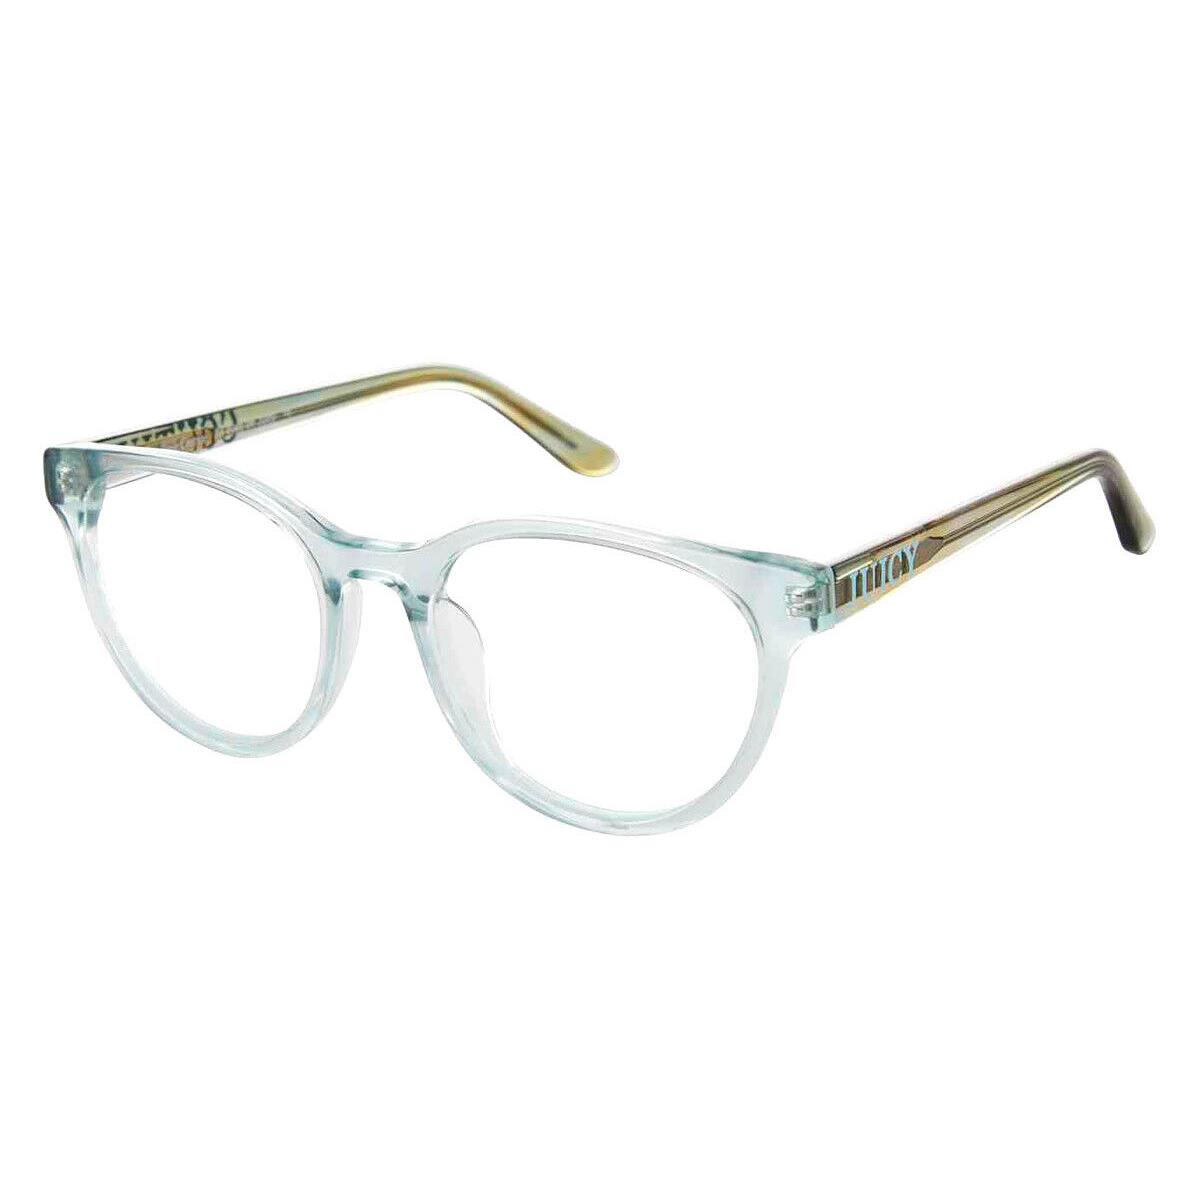 Juicy Couture Juc Eyeglasses Kids Crystal Teal 48mm - Frame: Crystal Teal, Lens: Demo